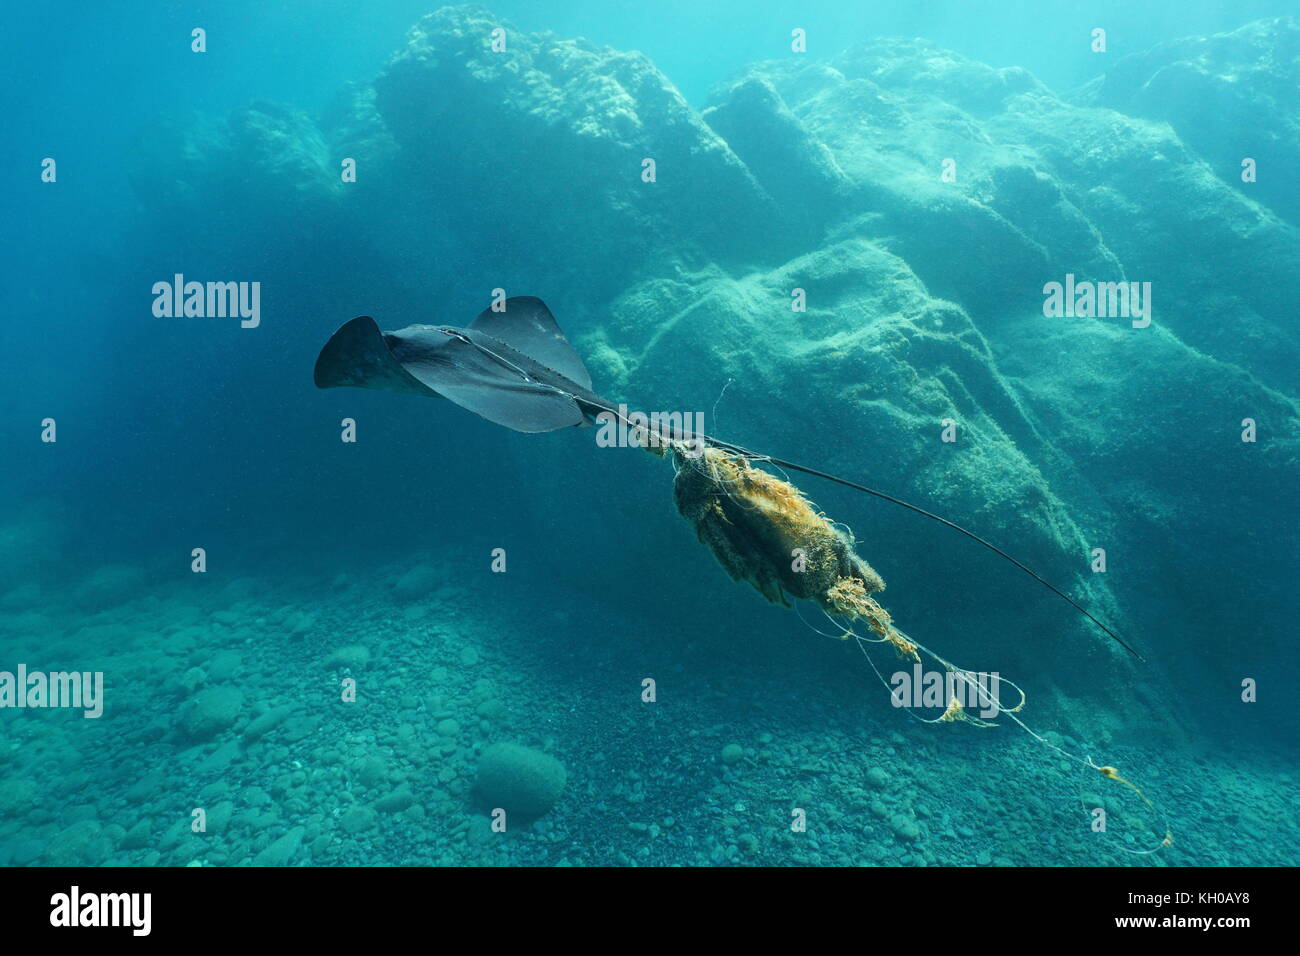 Ein stingray schwimmt unter Wasser verletzten, eine Angelschnur verheddert, Mittelmeer, Costa Brava, Katalonien, Spanien Stockfoto